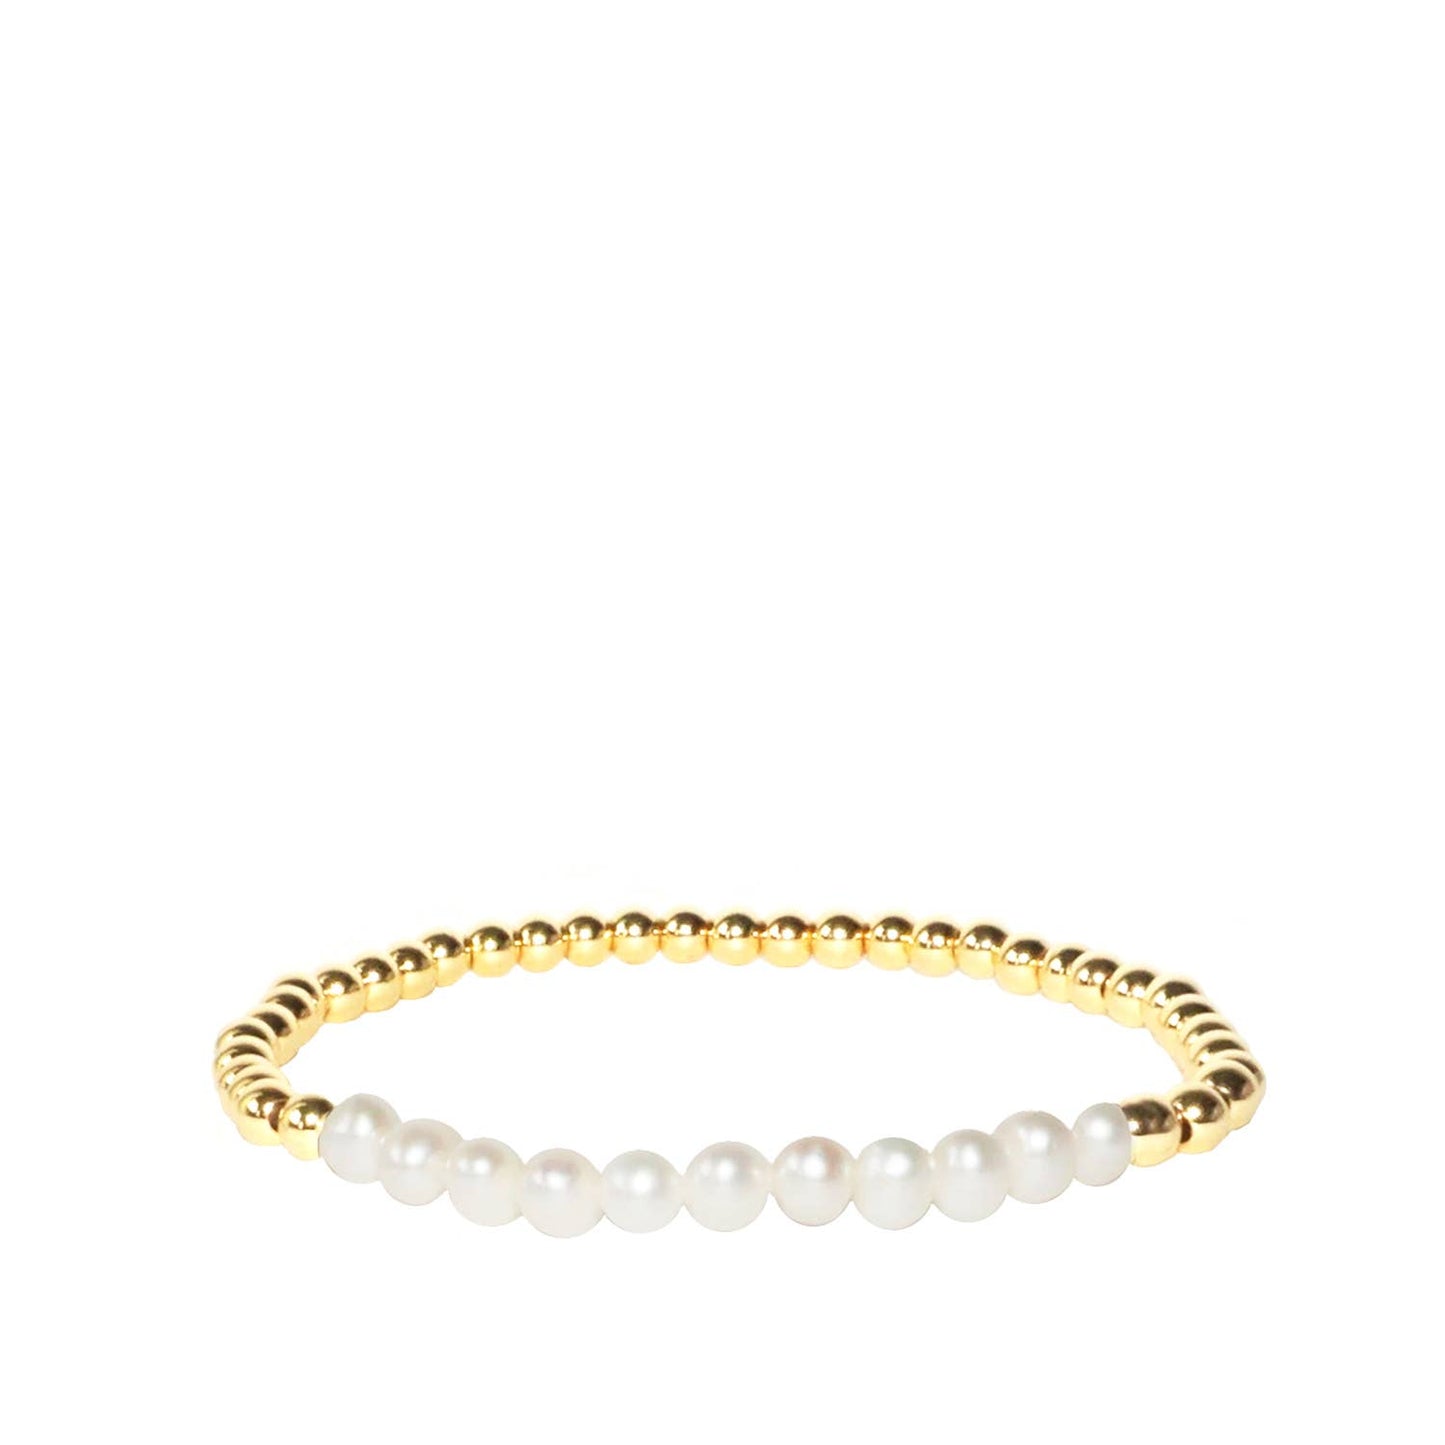 Metal and pearl beaded bracelet